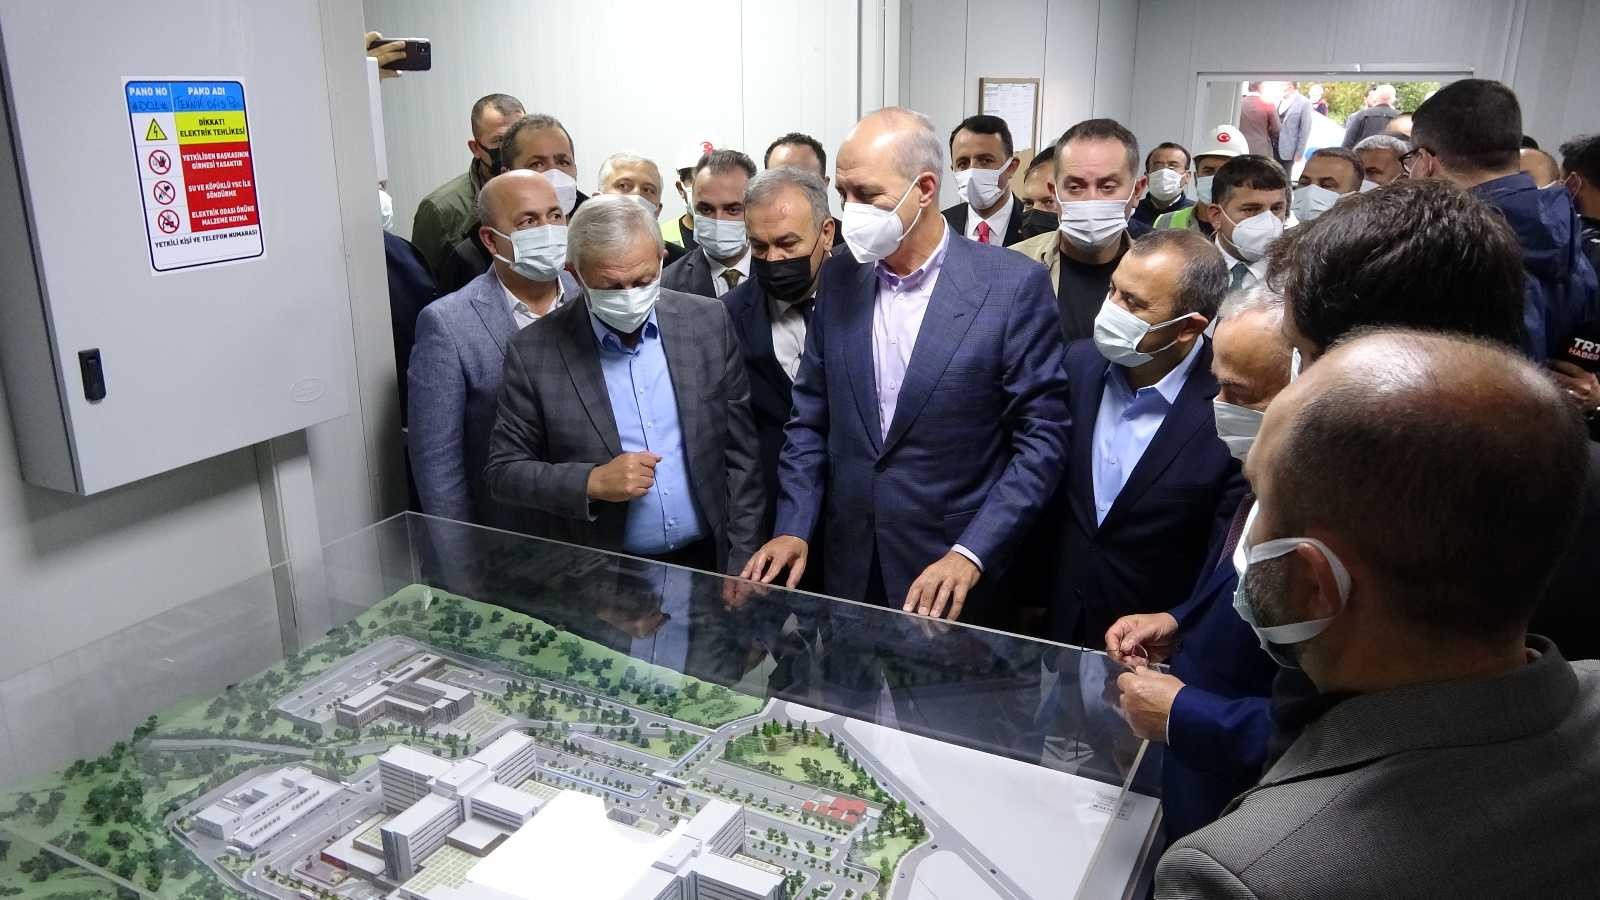 AK Parti Genel Başkanvekili Kurtulmuş: “Şehir hastanesi Ordu için hayati projelerden birisidir” #ordu